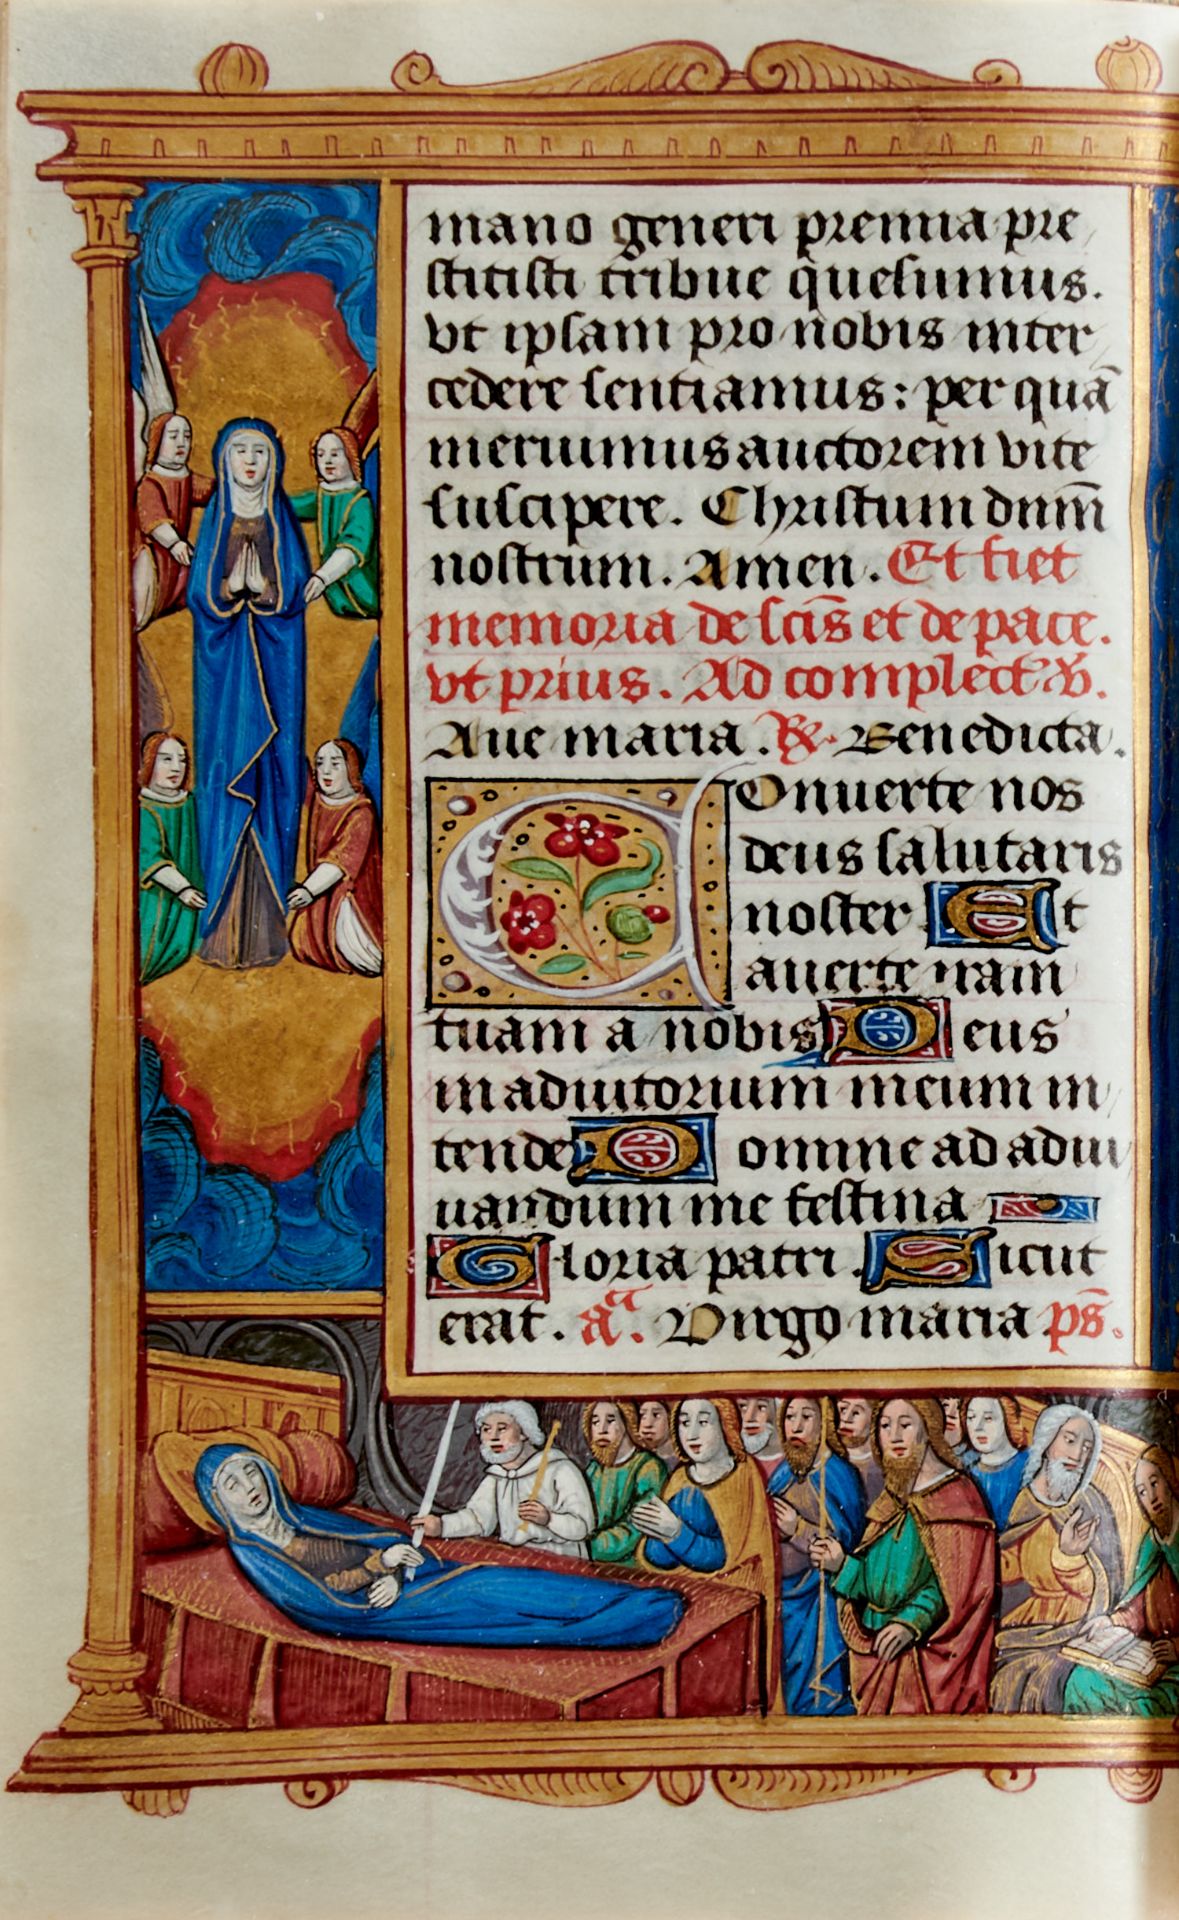 Pariser Stundenbuch. Lateinische Handschrift auf Pergament. Paris, um 1500. Ca. 14 x 10 cm. - Image 18 of 26